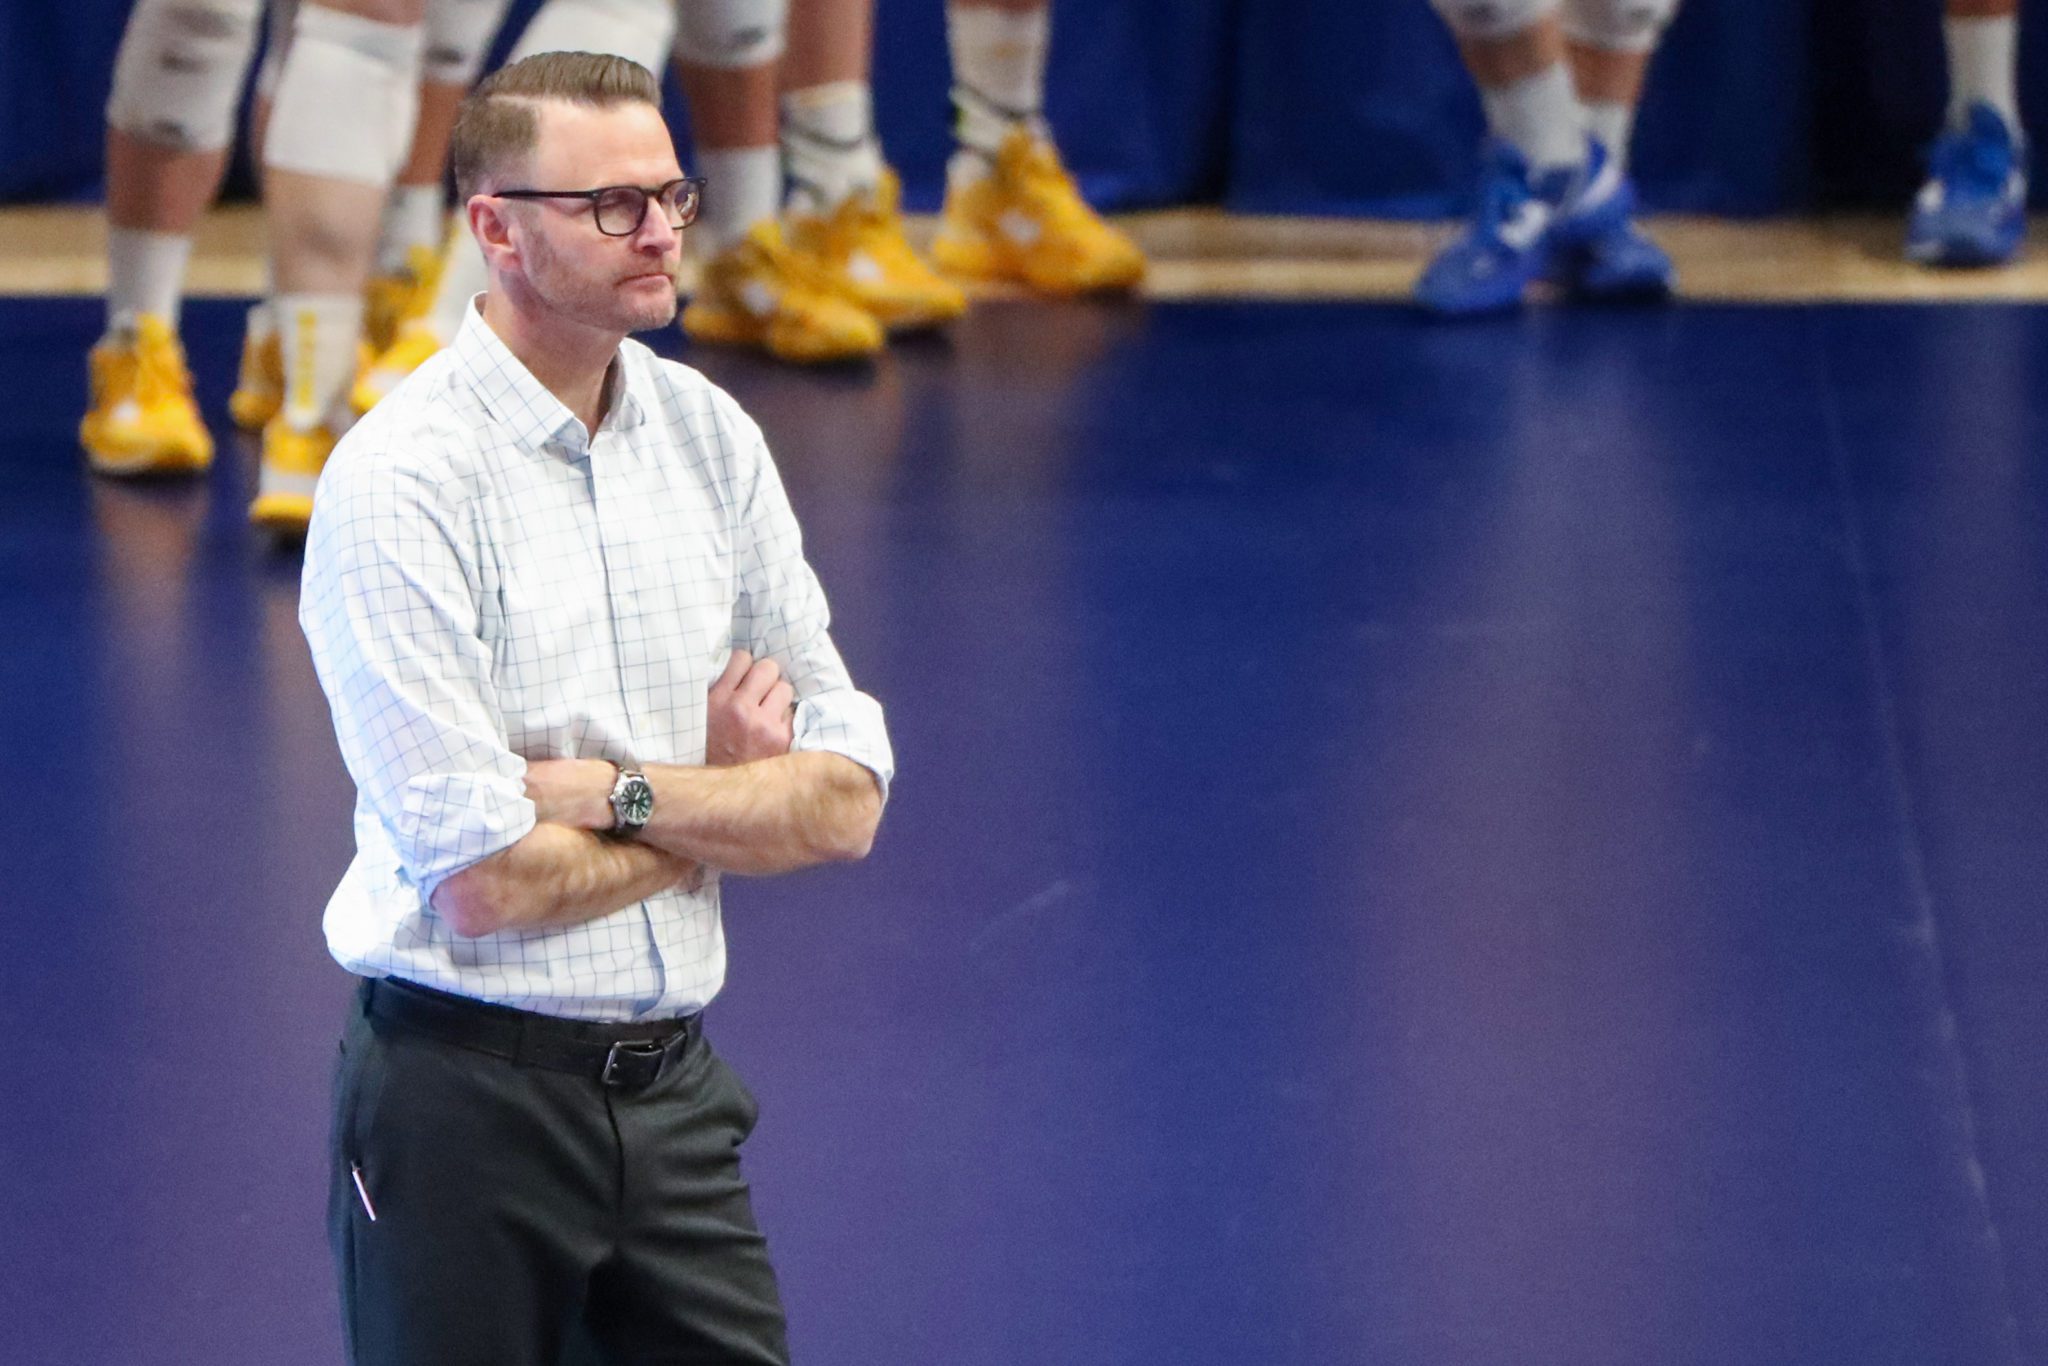 Pitt Volleyball head coach Dan Fisher